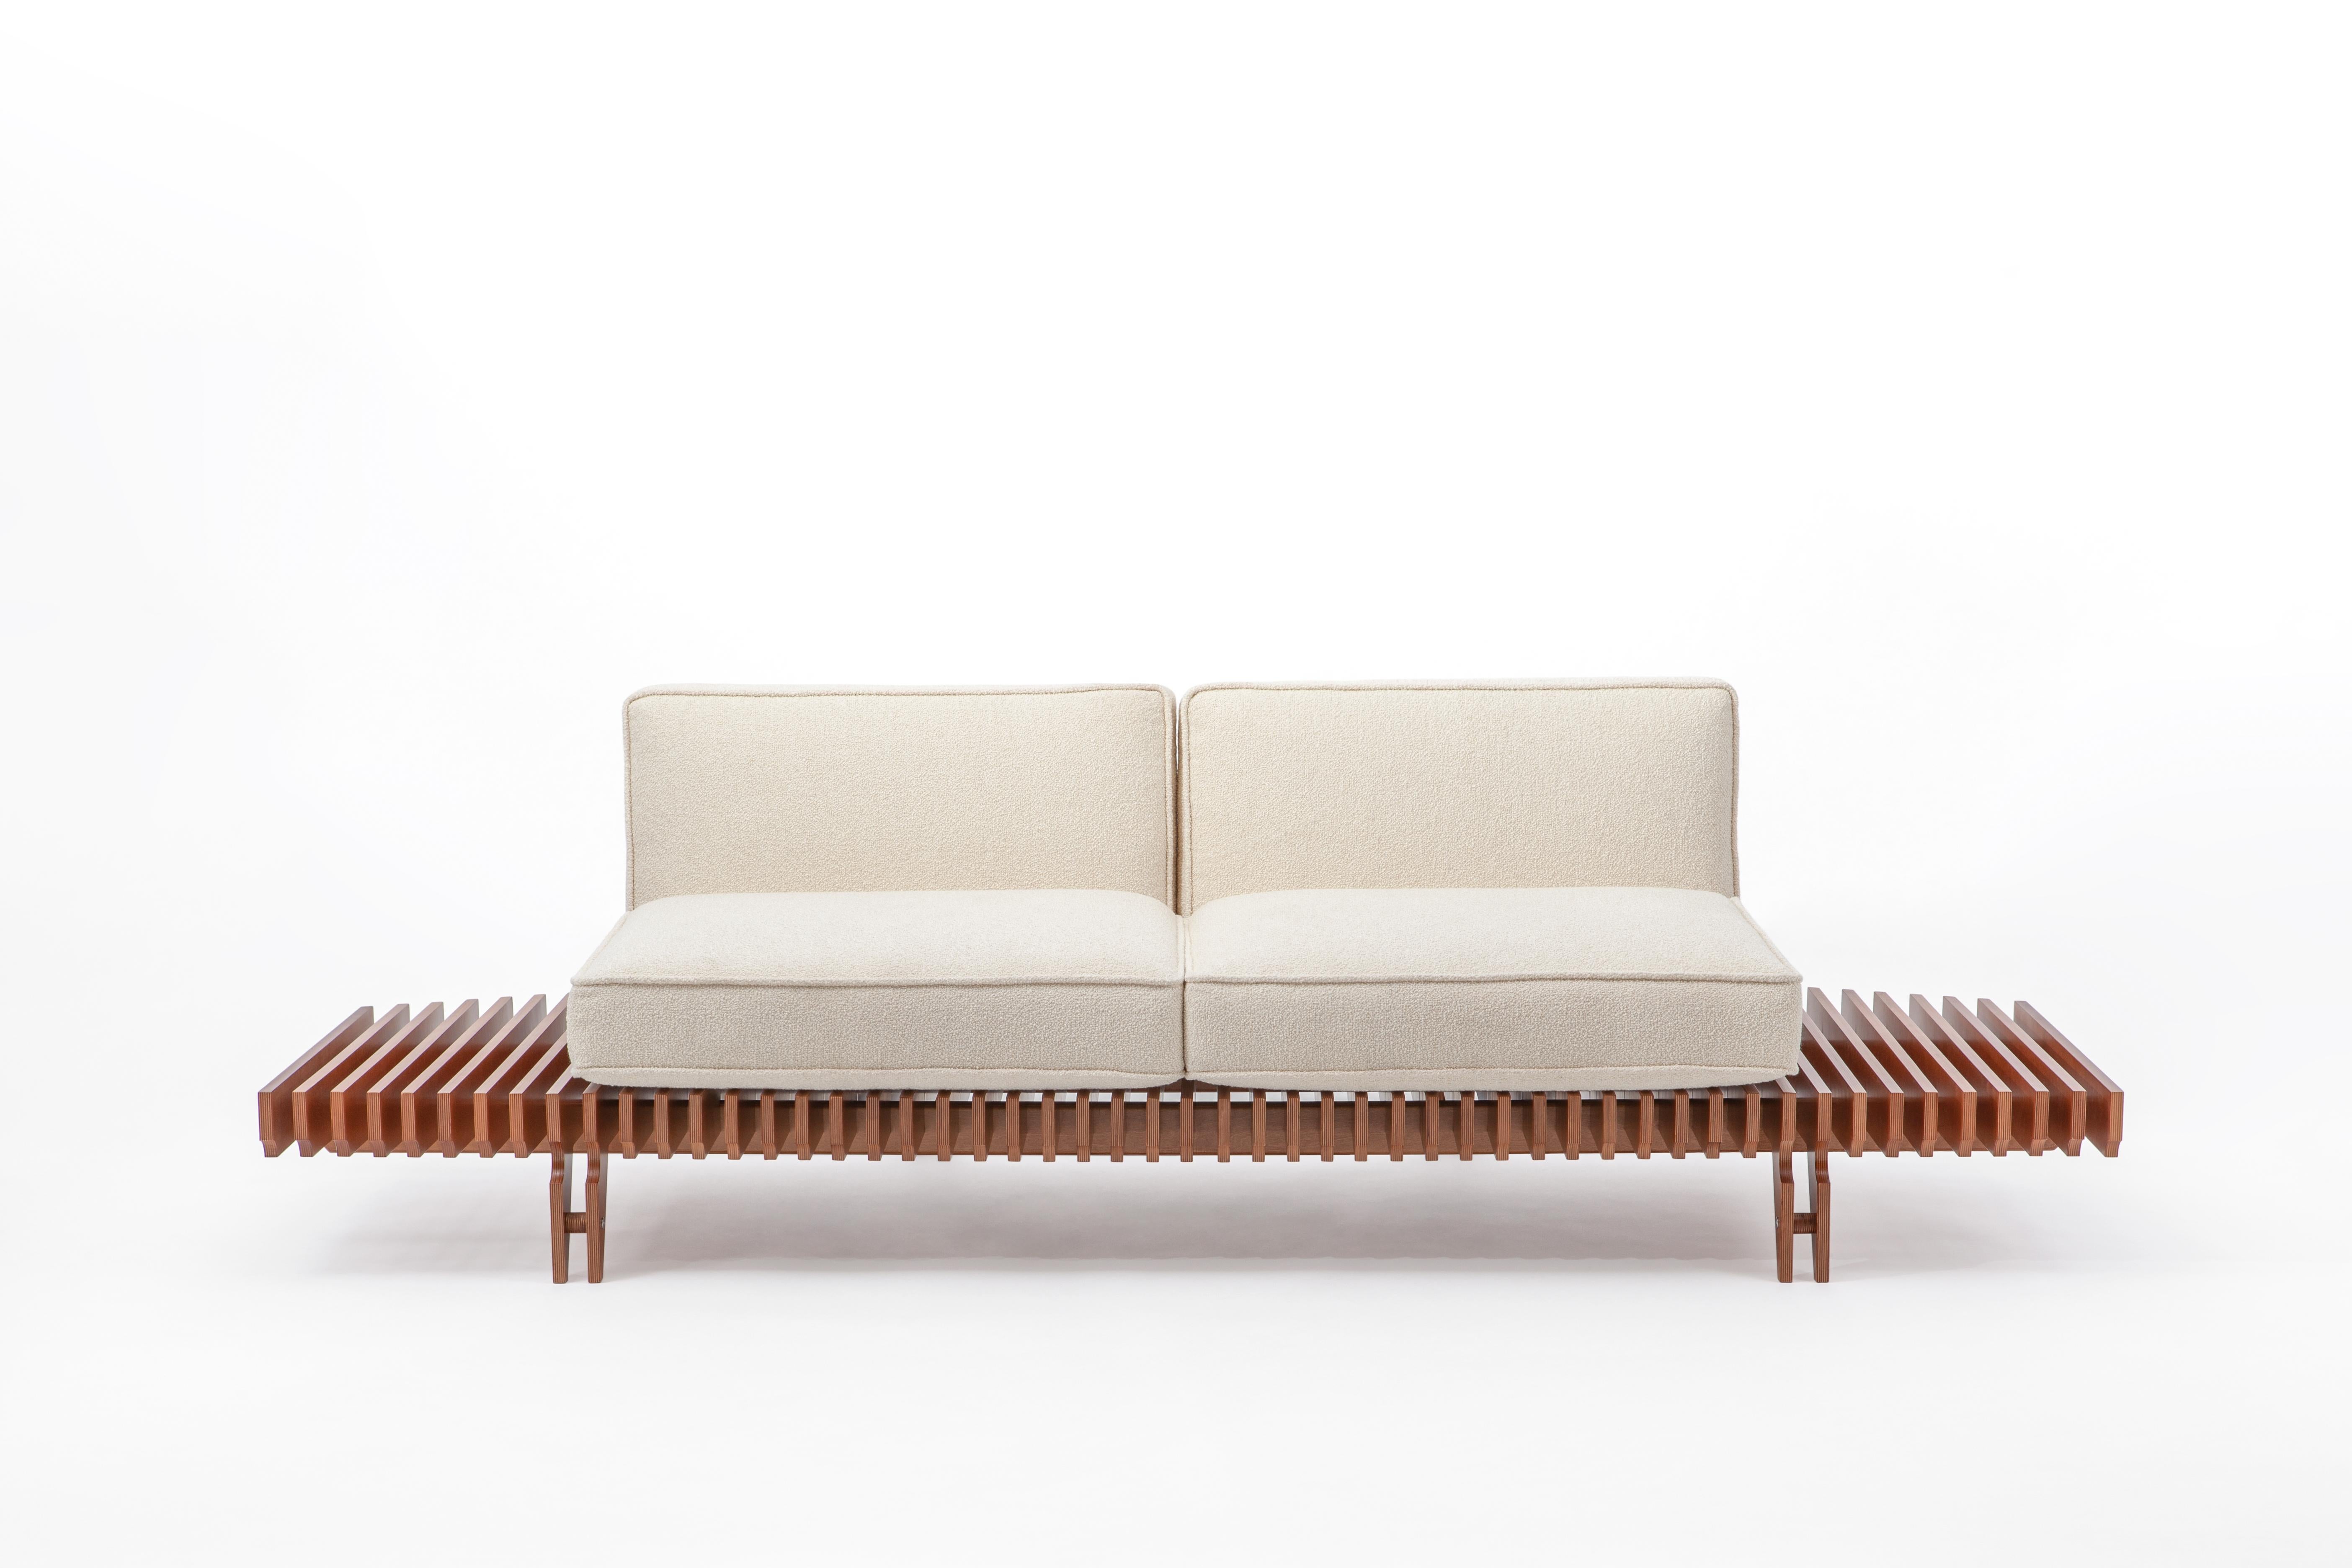 Canapé contemporain Muir Paesaggio collection conçue par Hannes Peer pour SEM. 
L'idée du canapé 